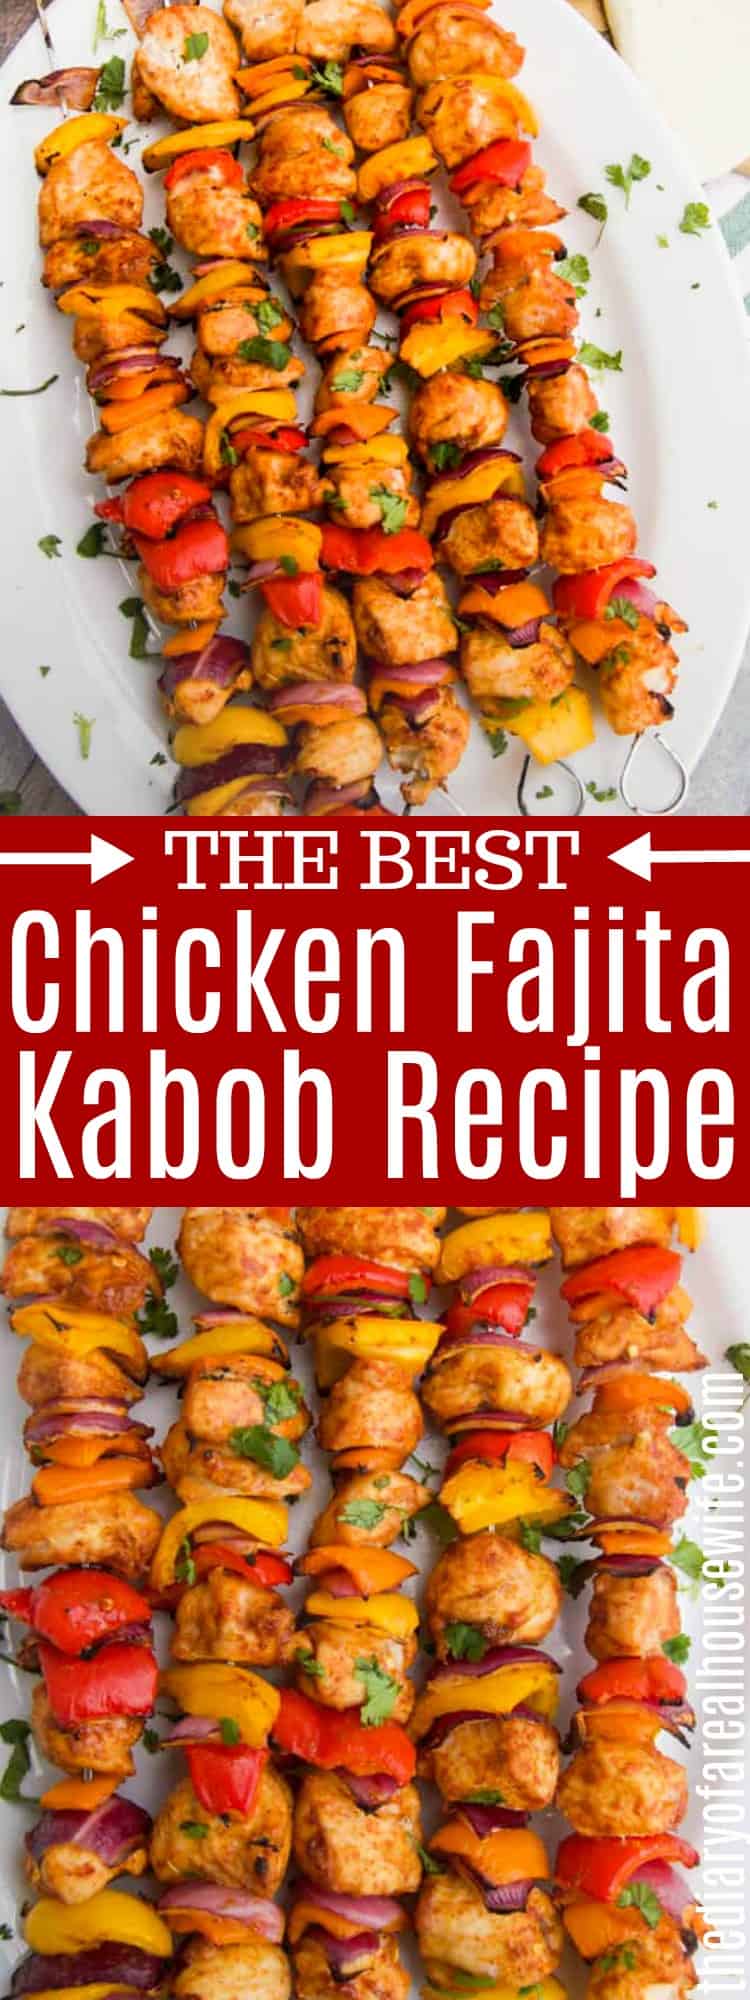 Chicken Fajita Kabobs